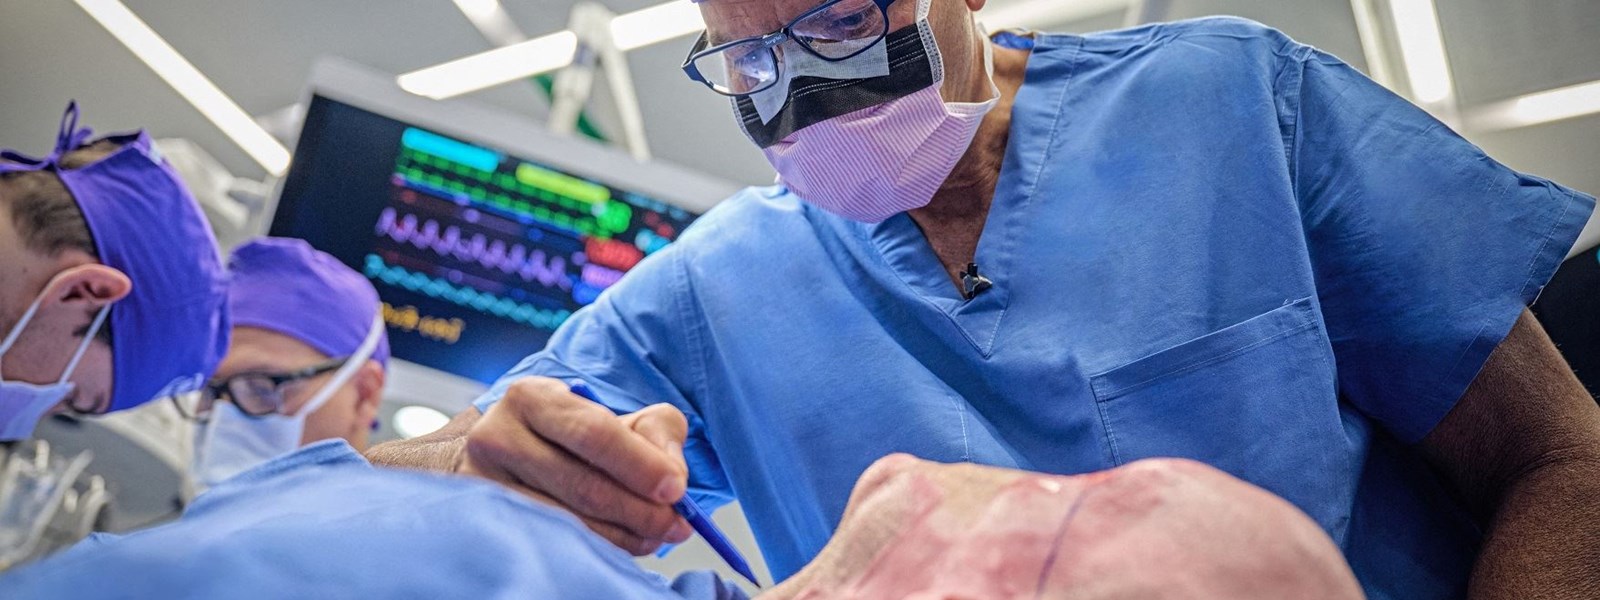 الدكتور إدواردو رودريغيز يُجري العملية الجراحية لآرون جيمس في مركز "لانغون هيلث" الطبي في نيويورك (27 أيار 2023 - أ ف ب).